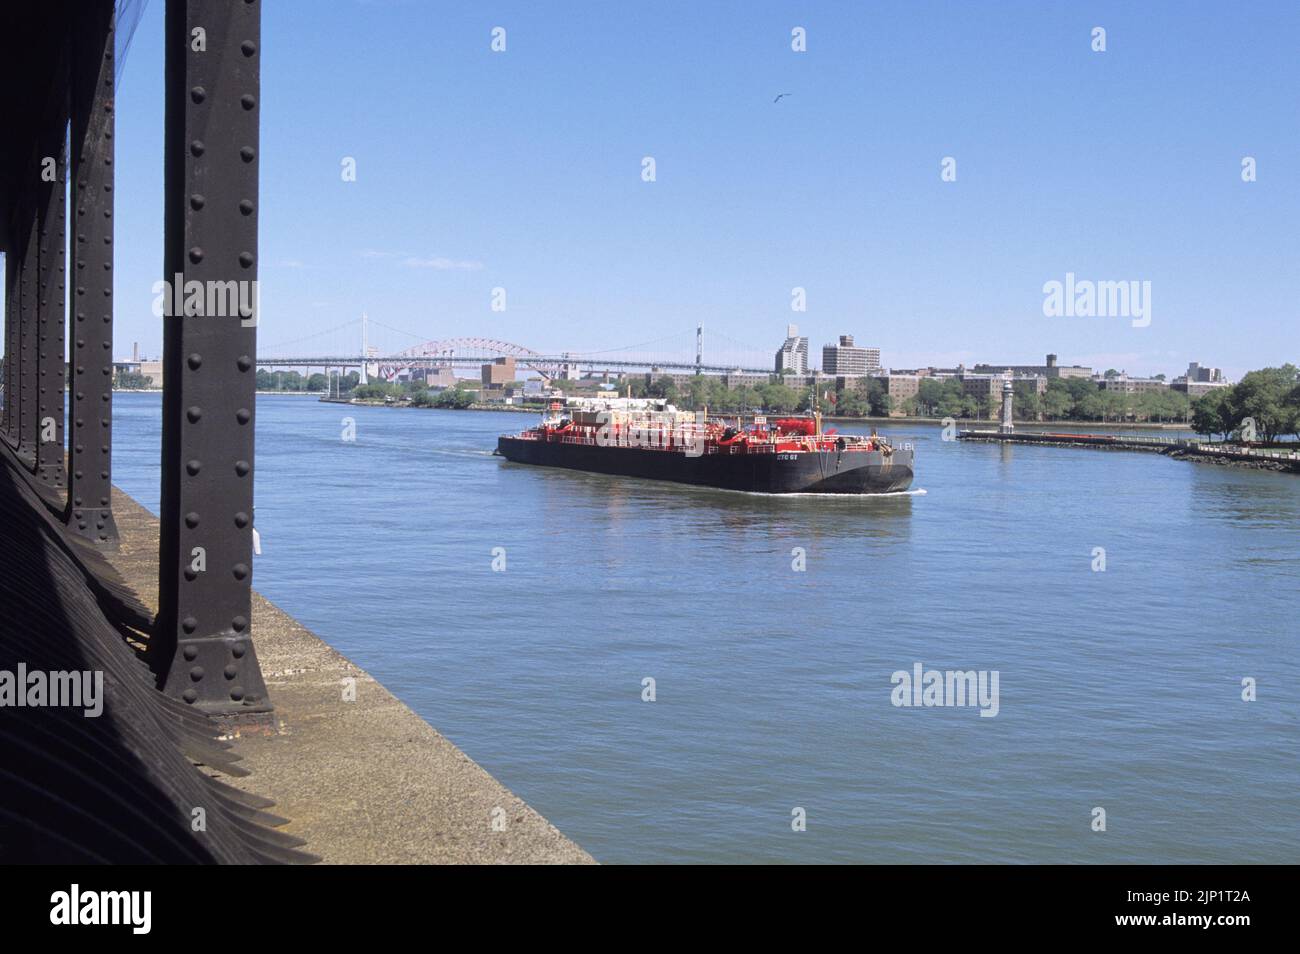 Schiff, Boot oder Schiff auf dem New Yorker Wasserweg. Öltanker auf dem East River, Upper East Side von Manhattan, New York City, USA Stockfoto